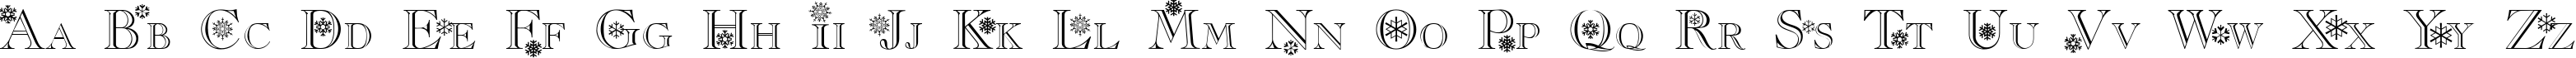 Пример написания английского алфавита шрифтом Christmas